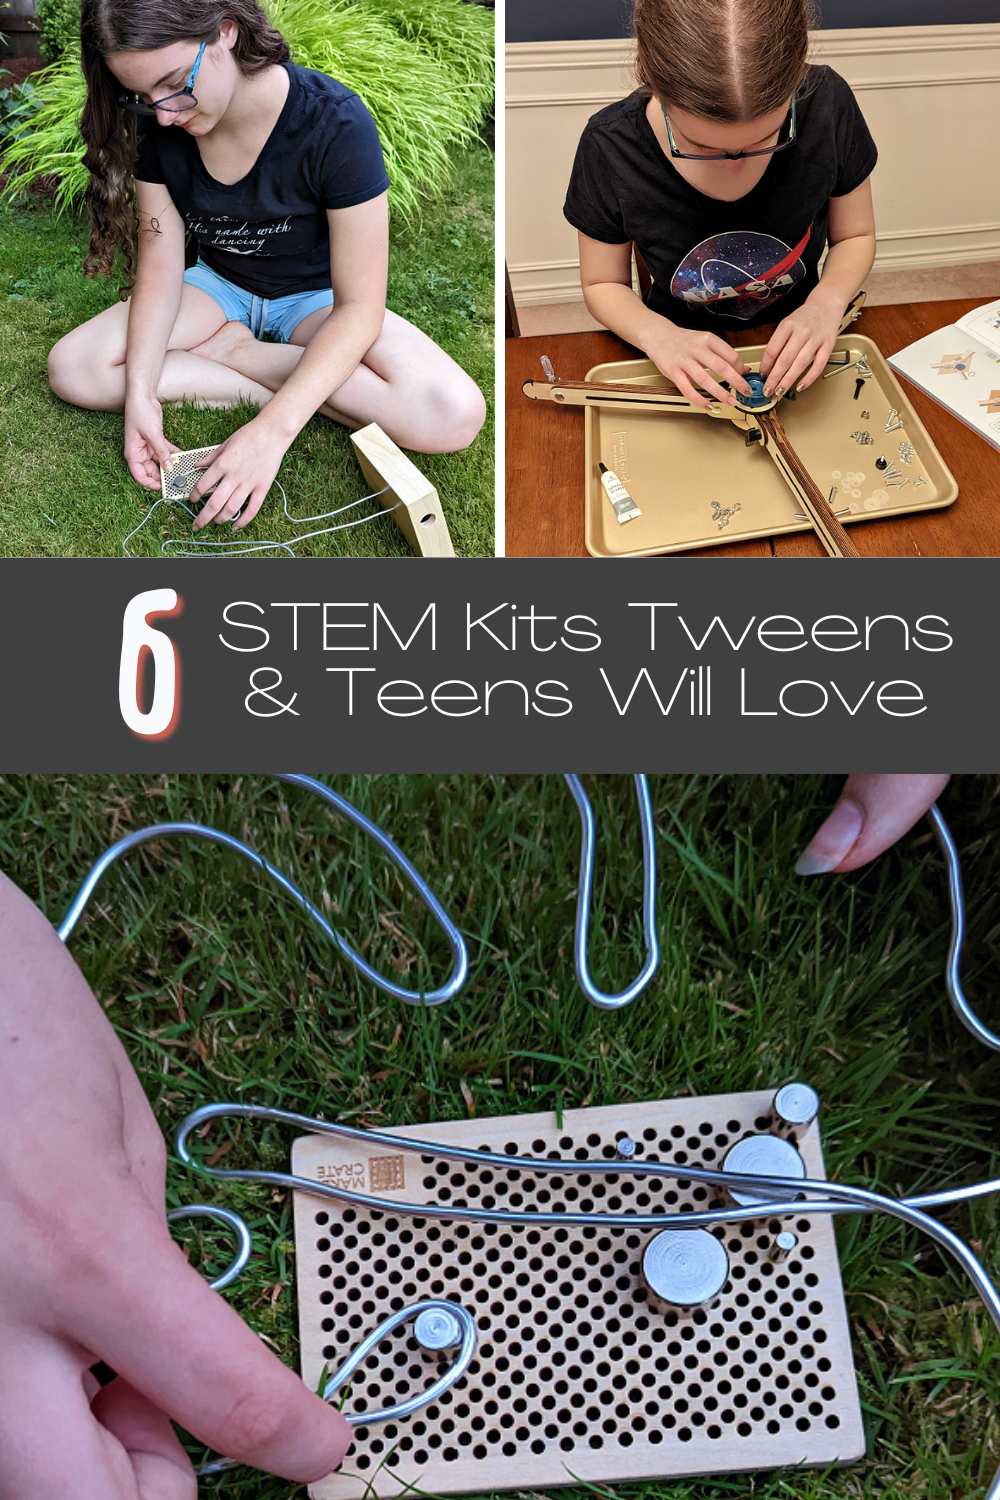 STEM kits for tweens & teens